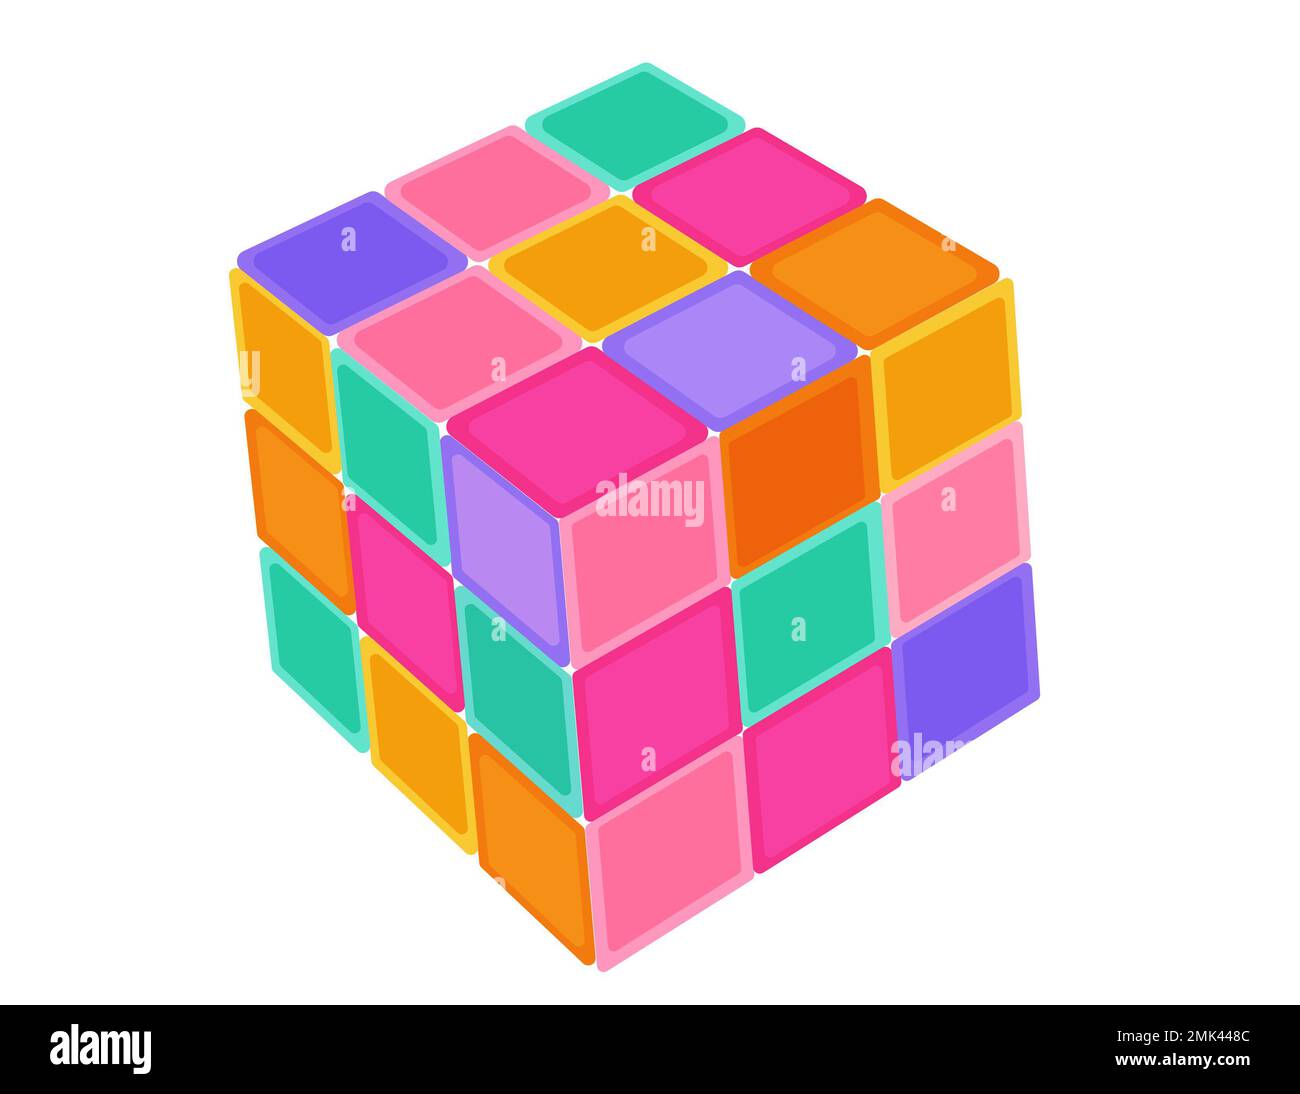 Icono del cubo, estilo isométrico 3D sobre un fondo blanco. Nostálgico gráfico 90s Foto de stock